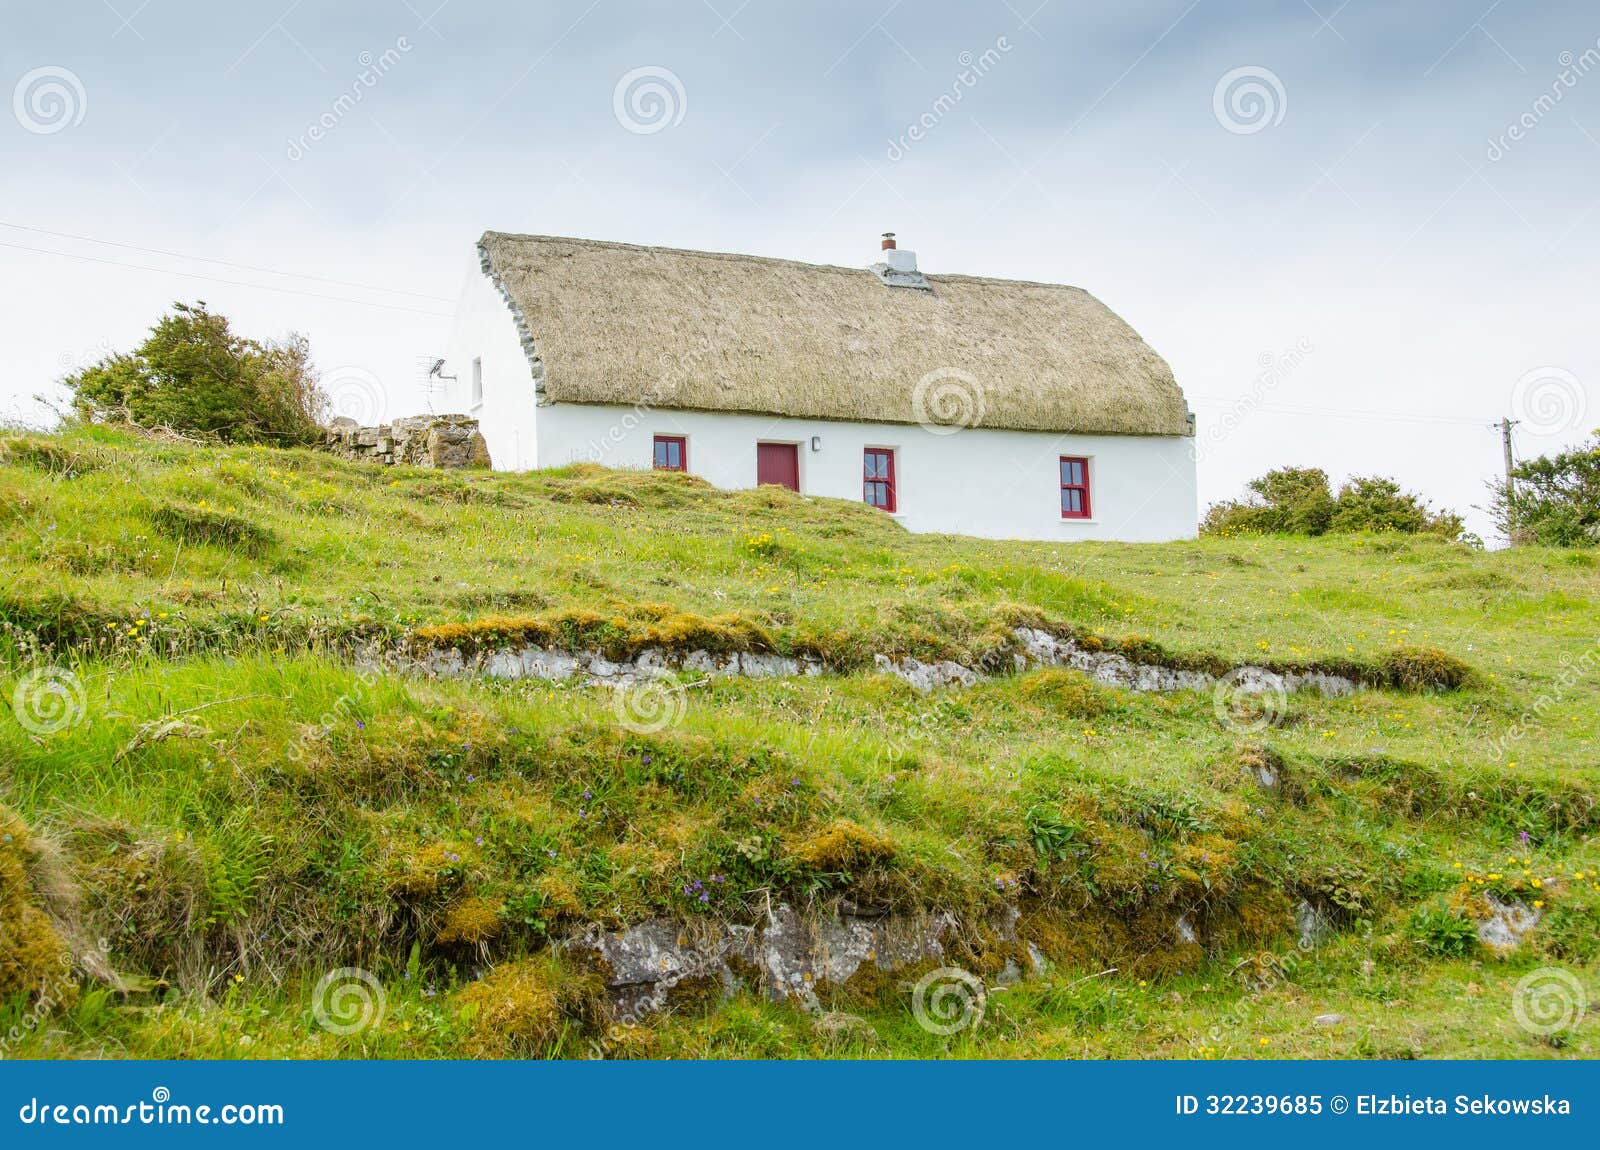 house in aran islands